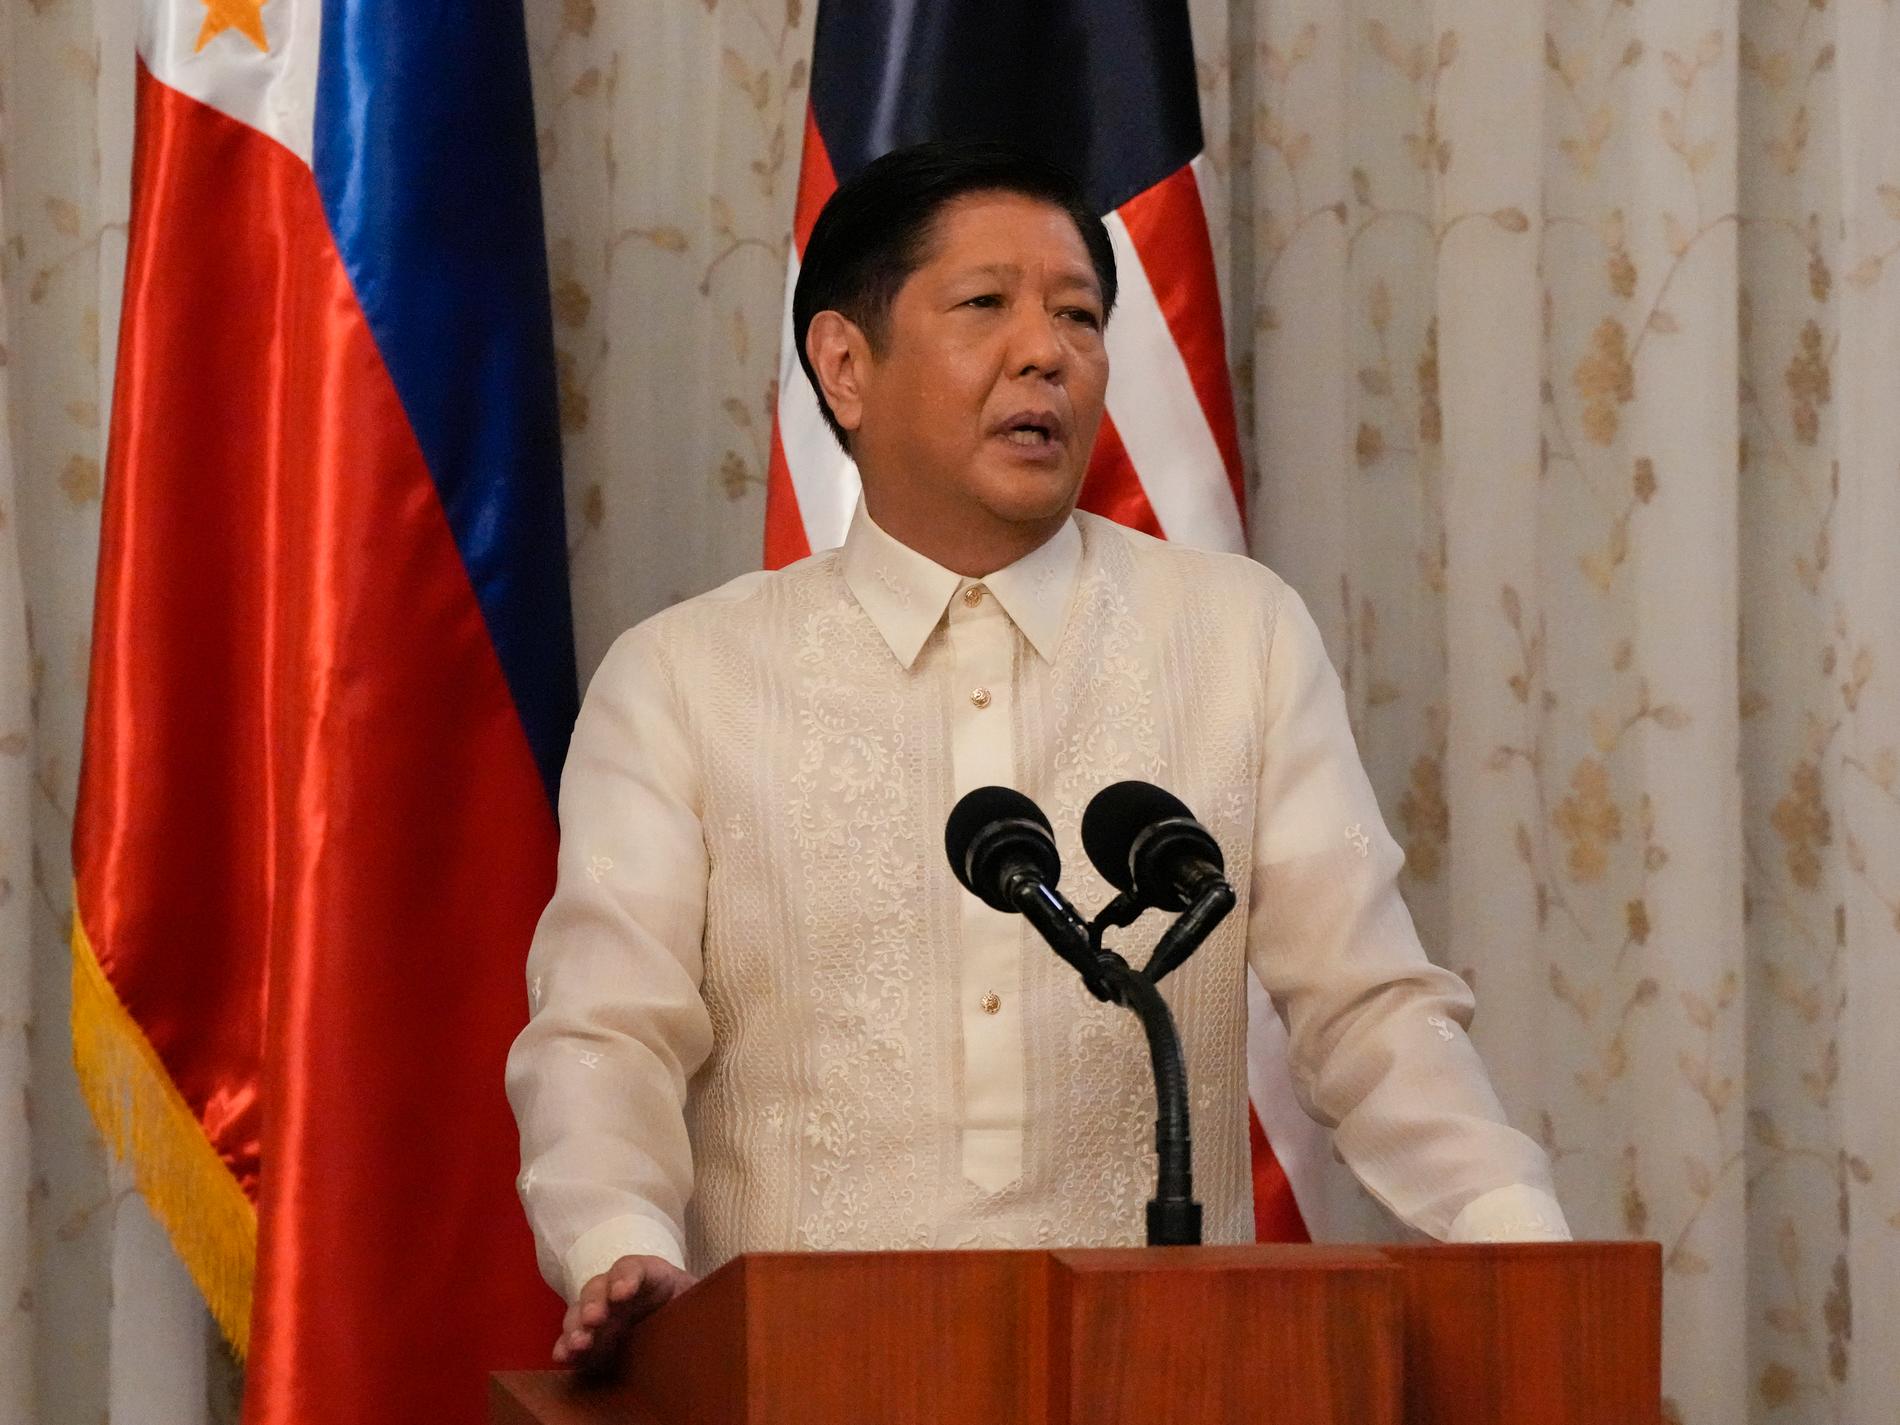 Filippinsk guvernör skjuten till döds